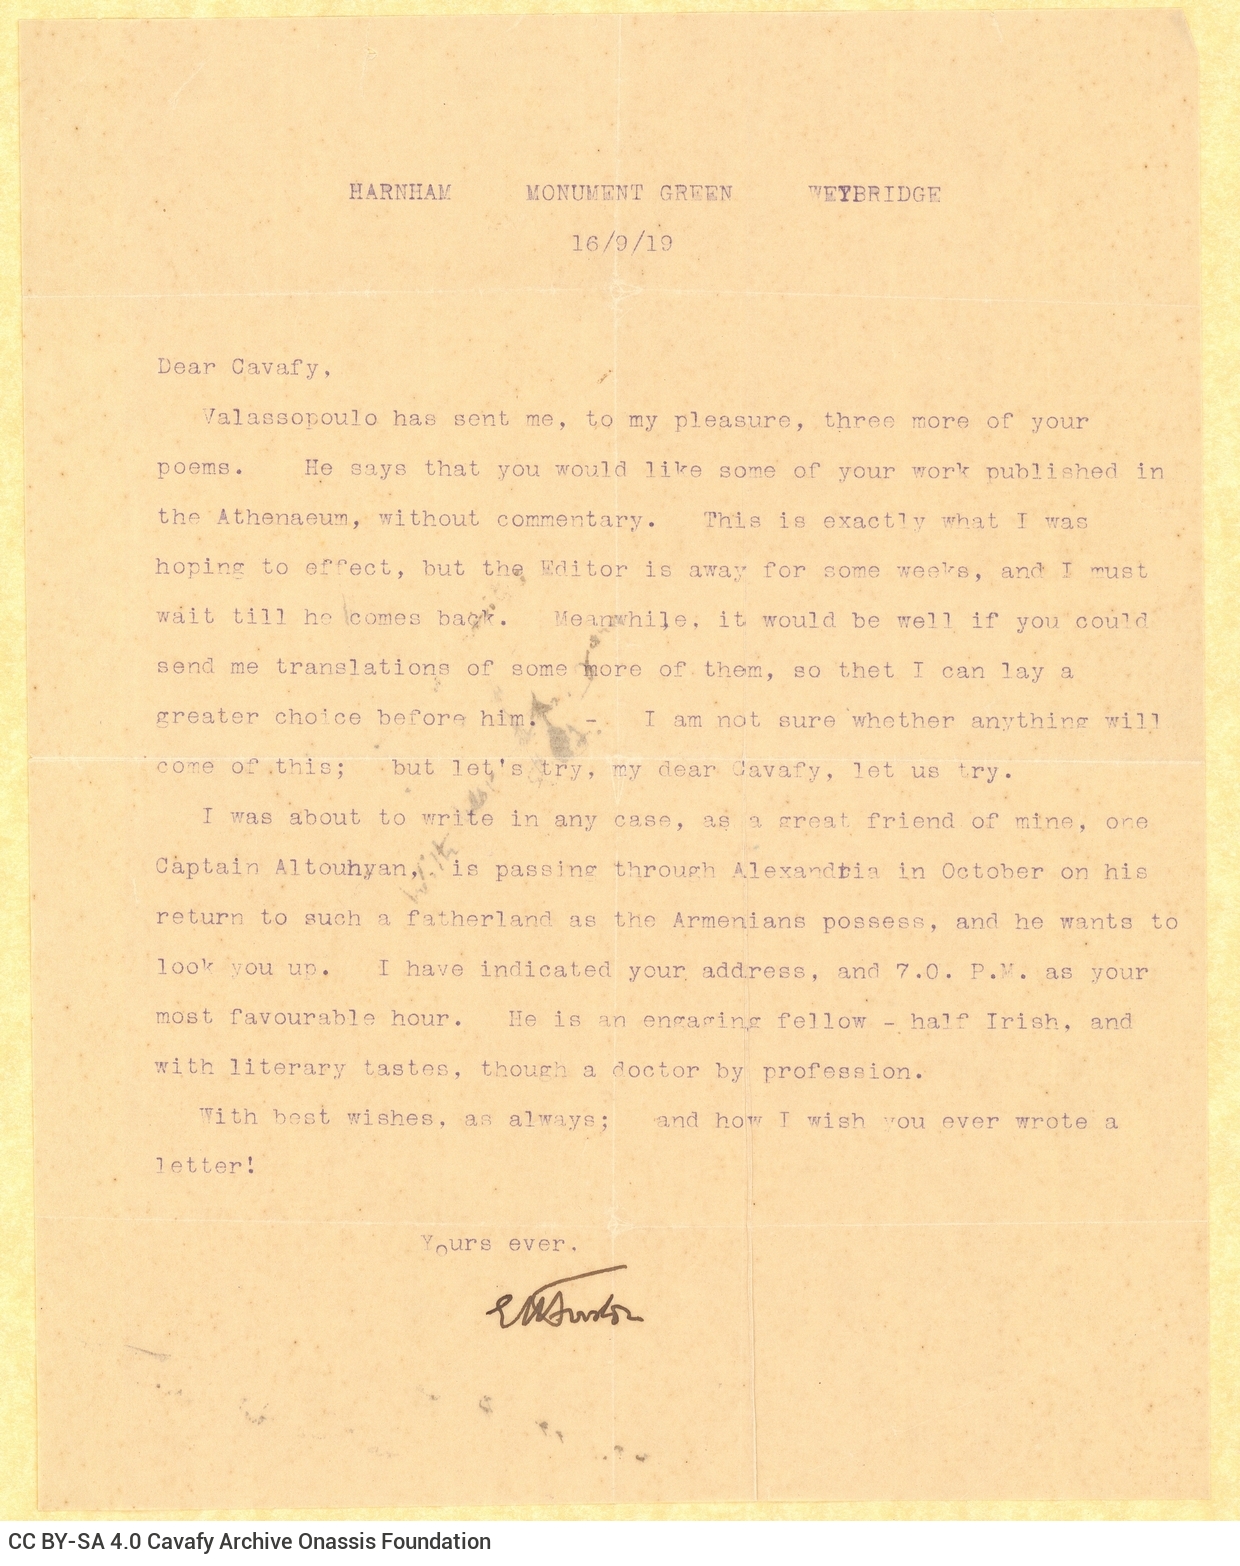 Δακτυλόγραφη επιστολή του Ε. Μ. Φόρστερ (E. M. Forster) στη μία όψη φύλλου. Α